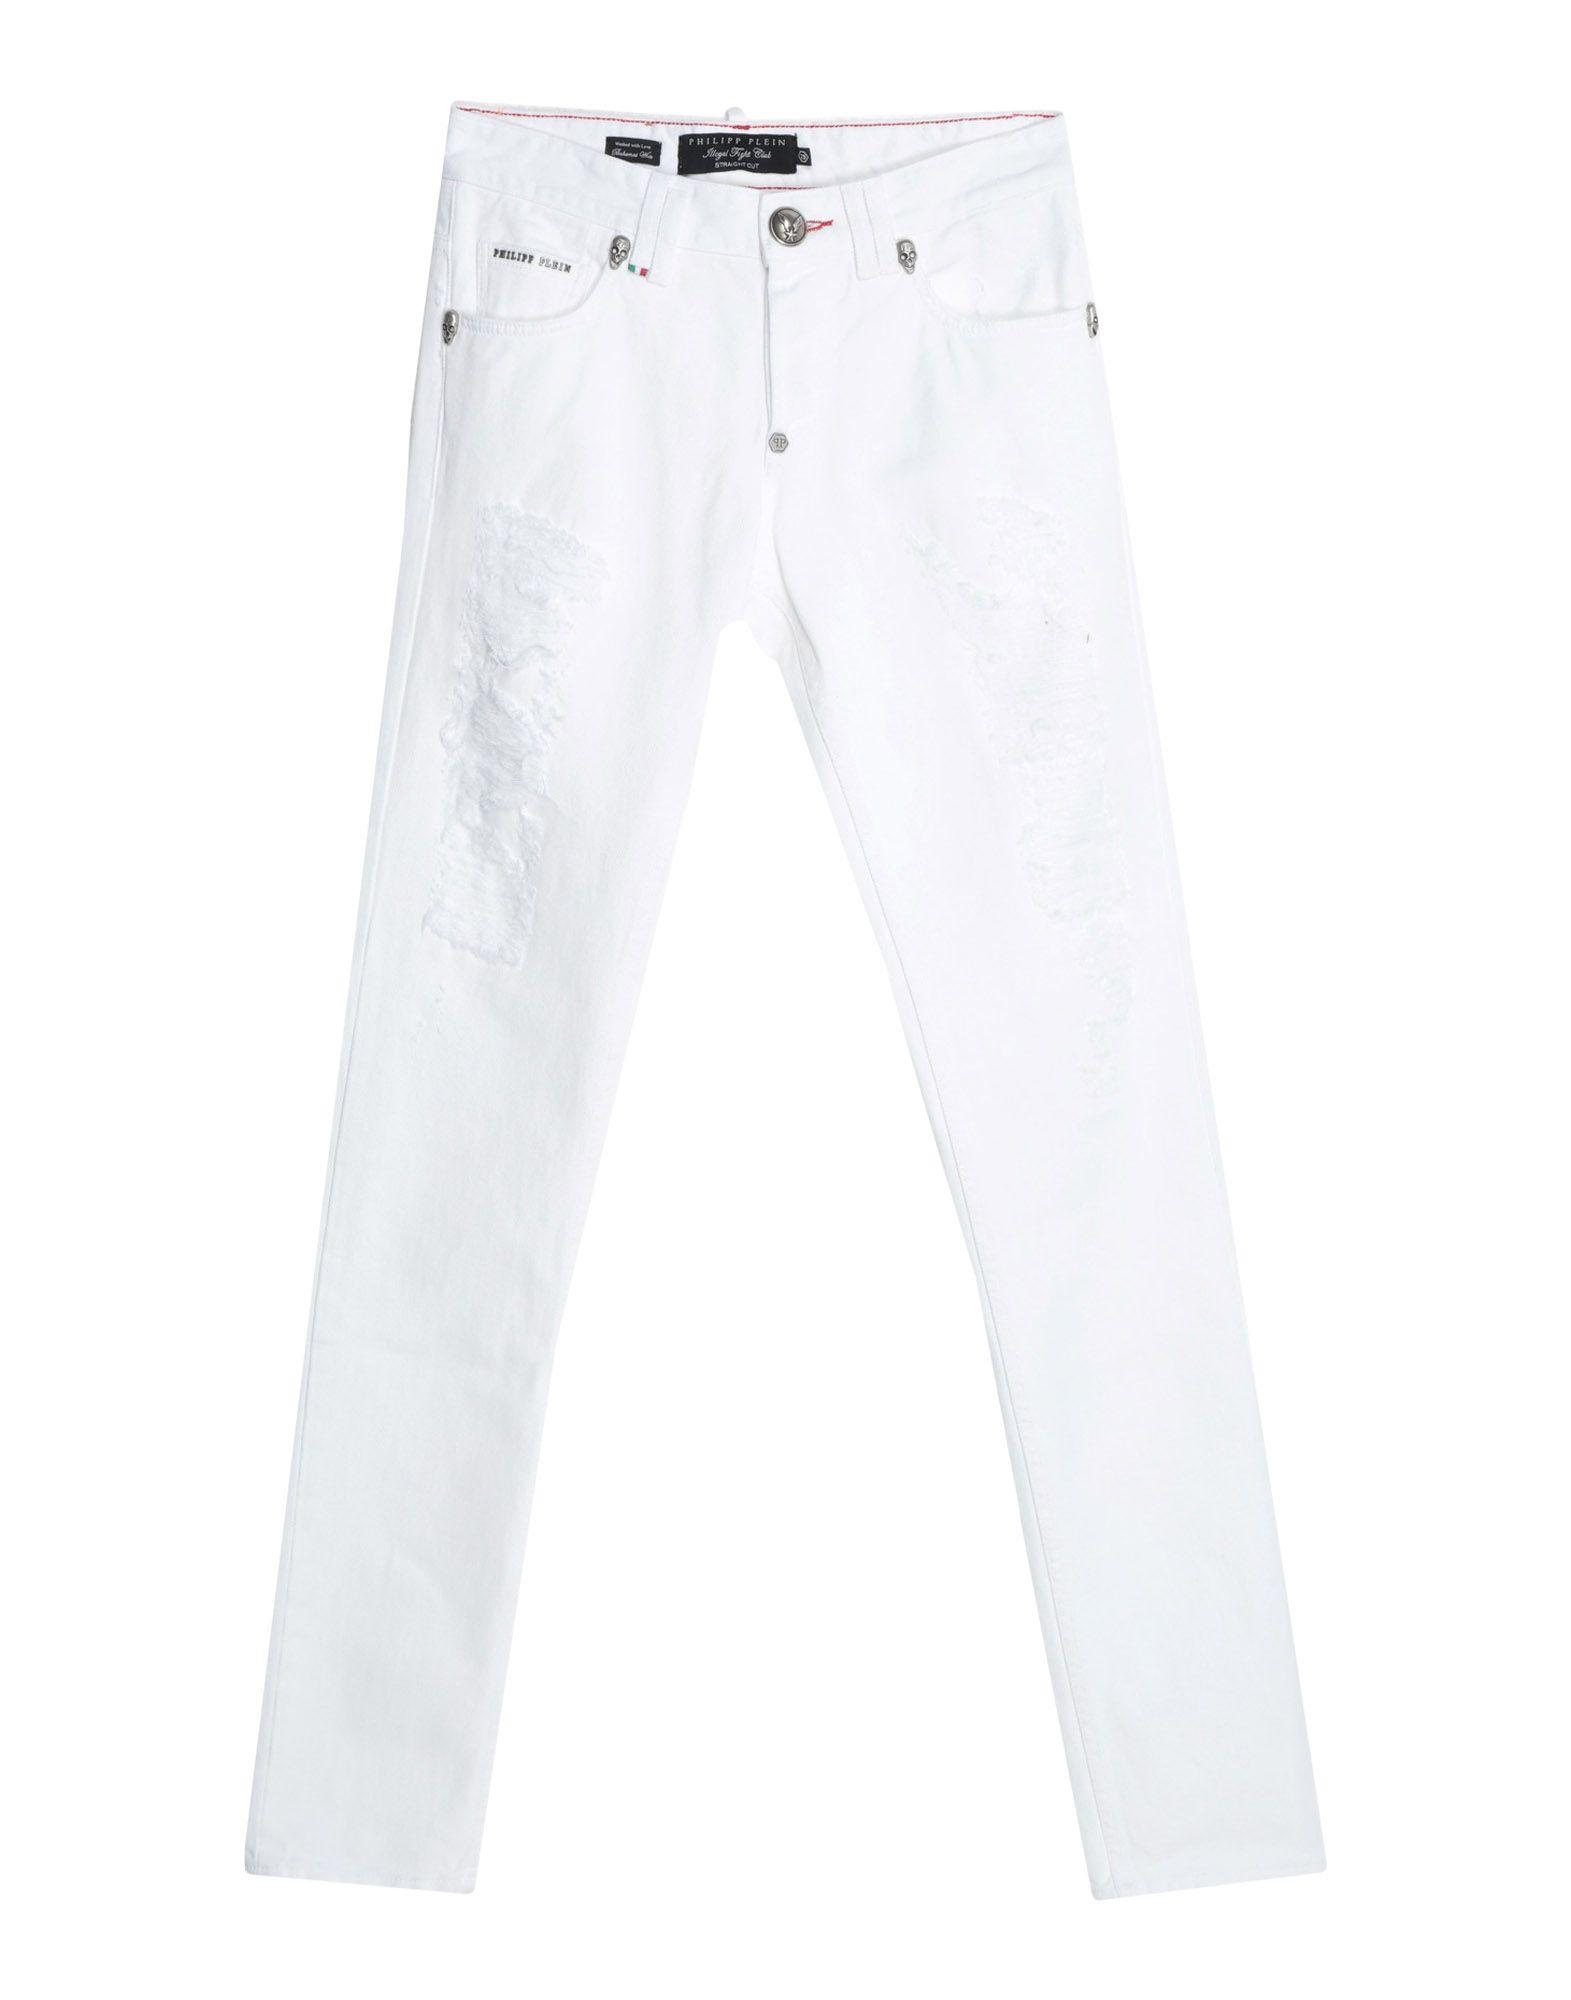 philipp plein white jeans